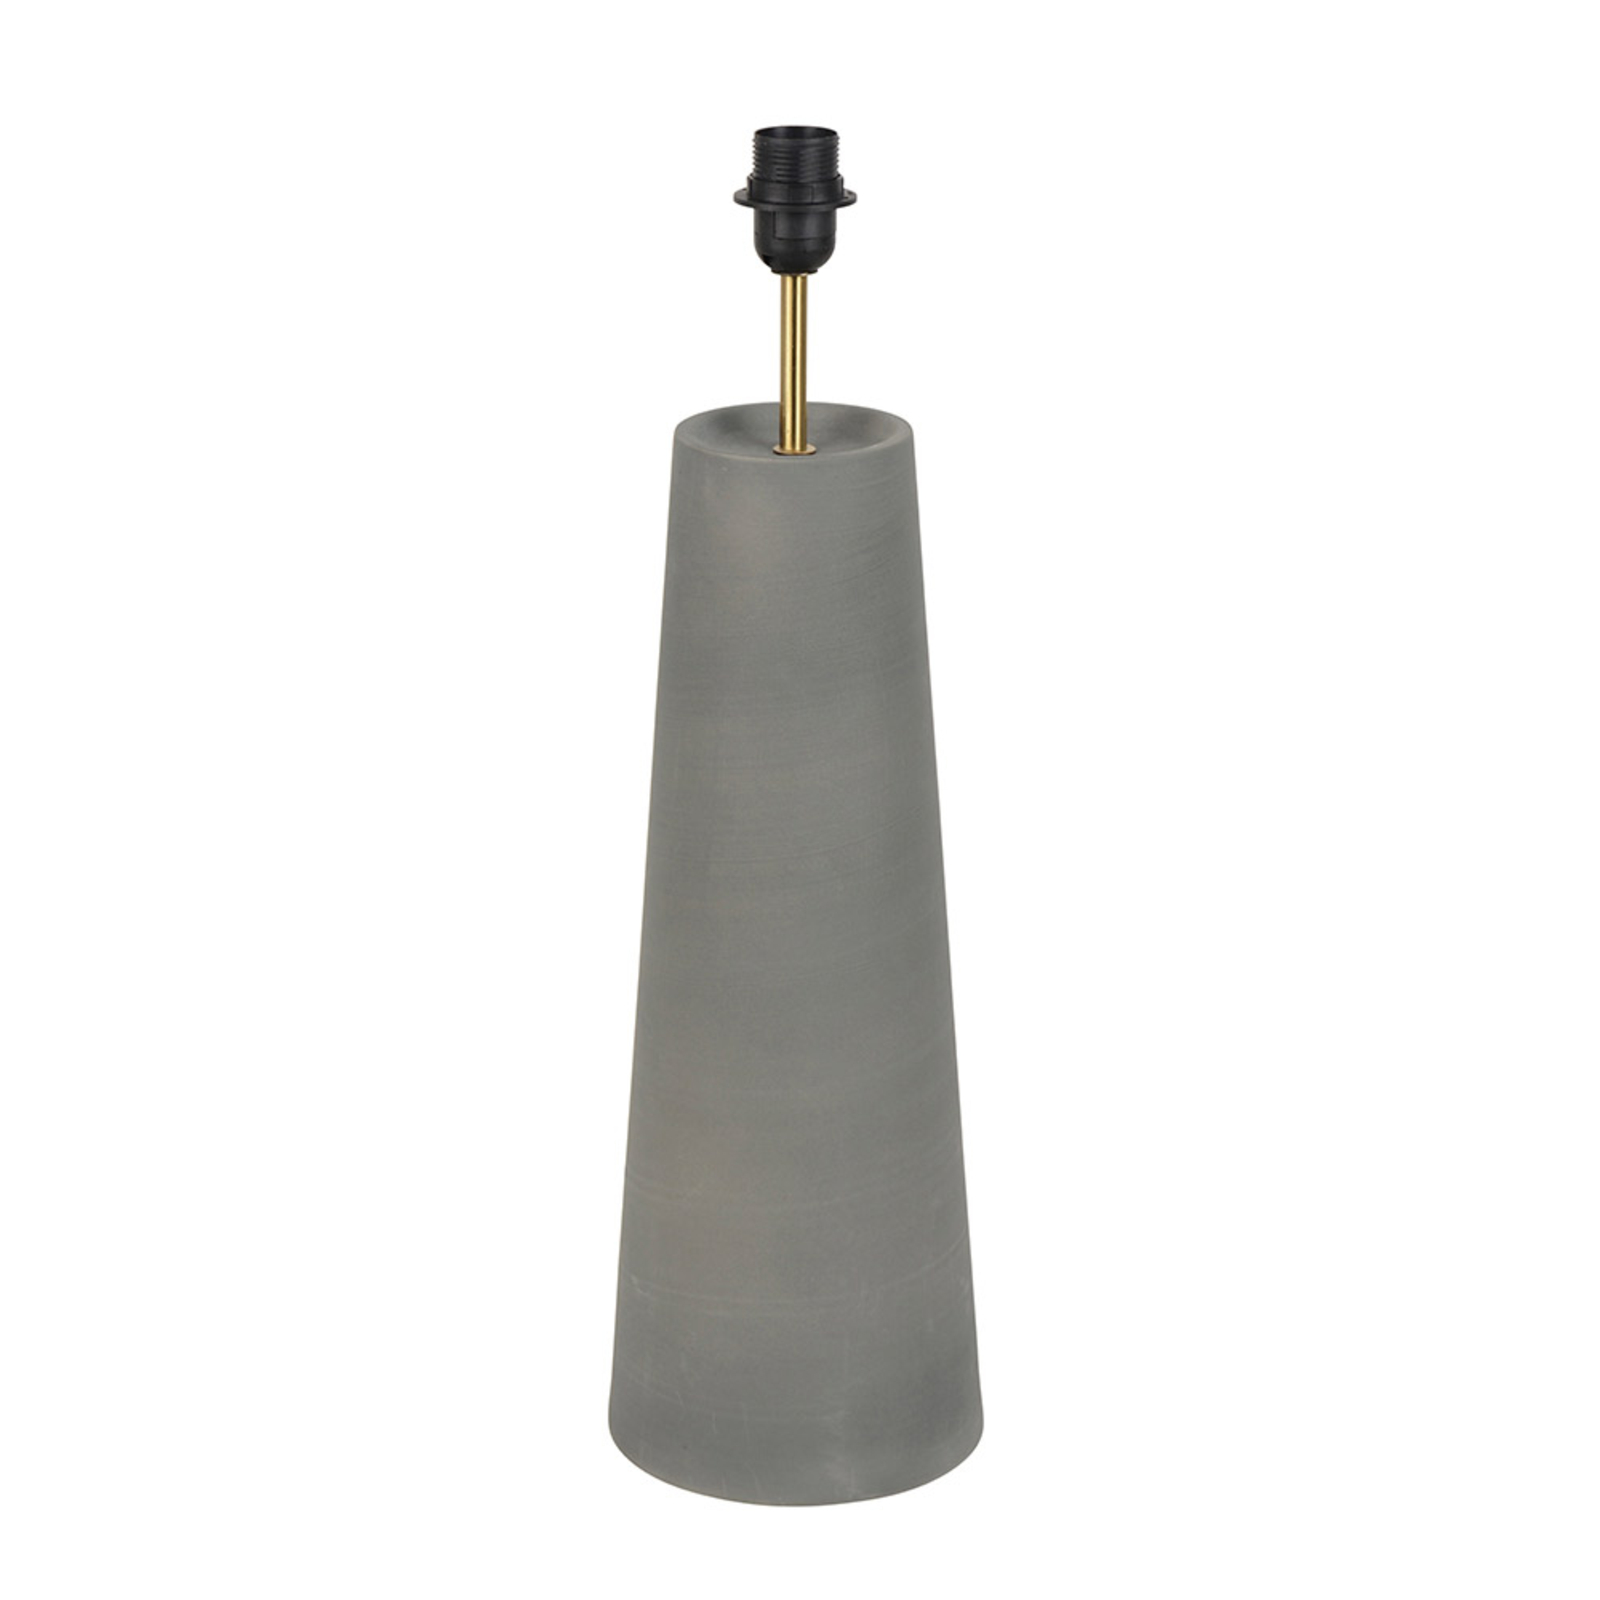 MARKET SET Cosiness stolní lampa, keramika, šedá